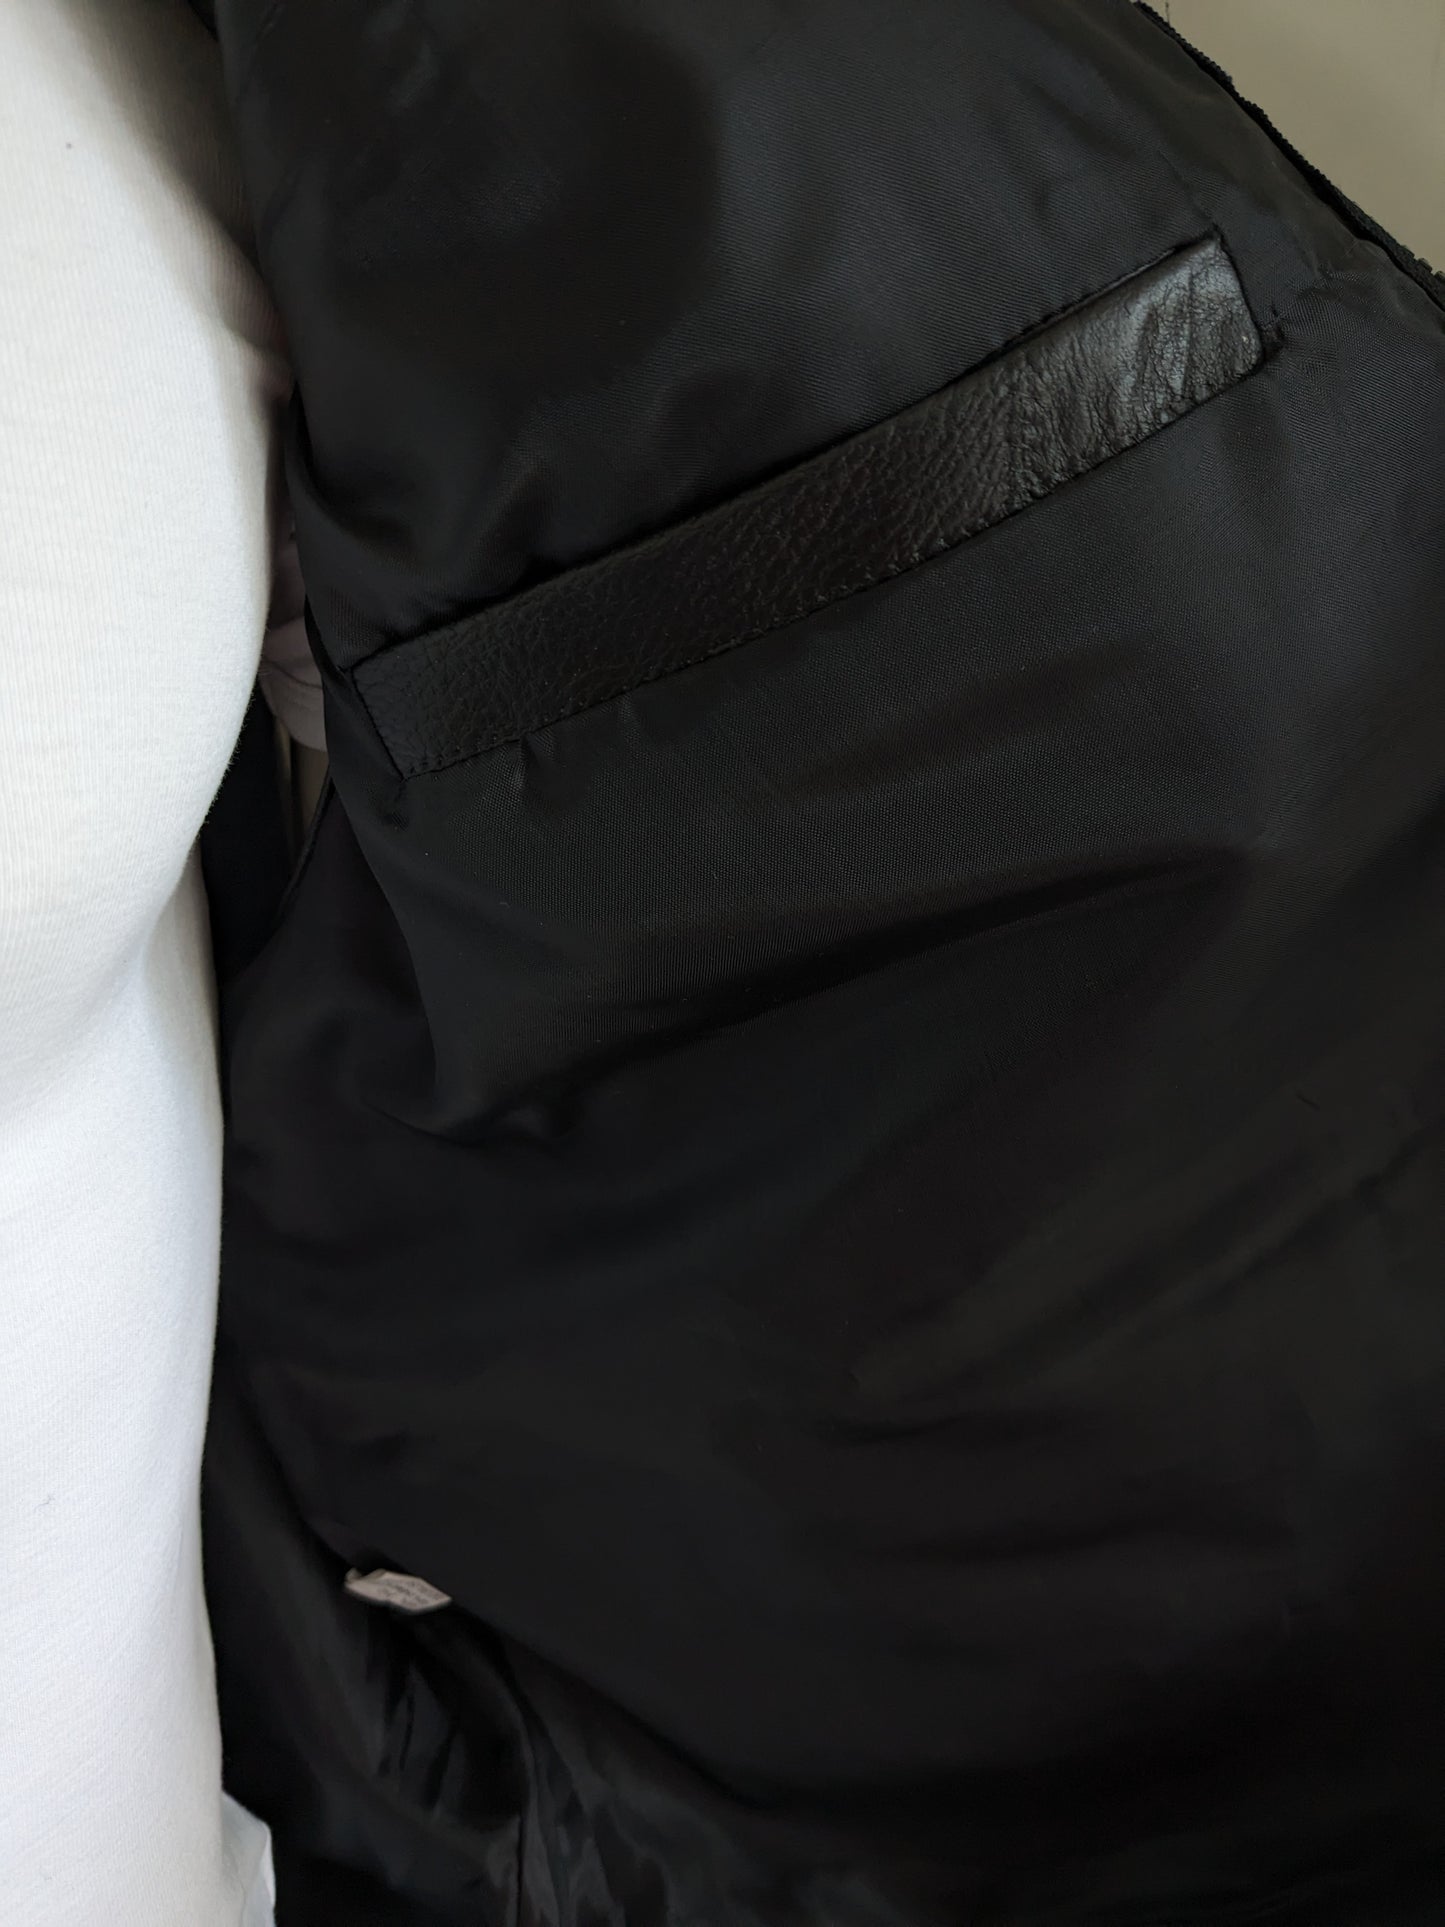 CS701 Leren Bodywarmer met vele zakken. Zwarte patches.  Maat XL. met 1 binnenzak.